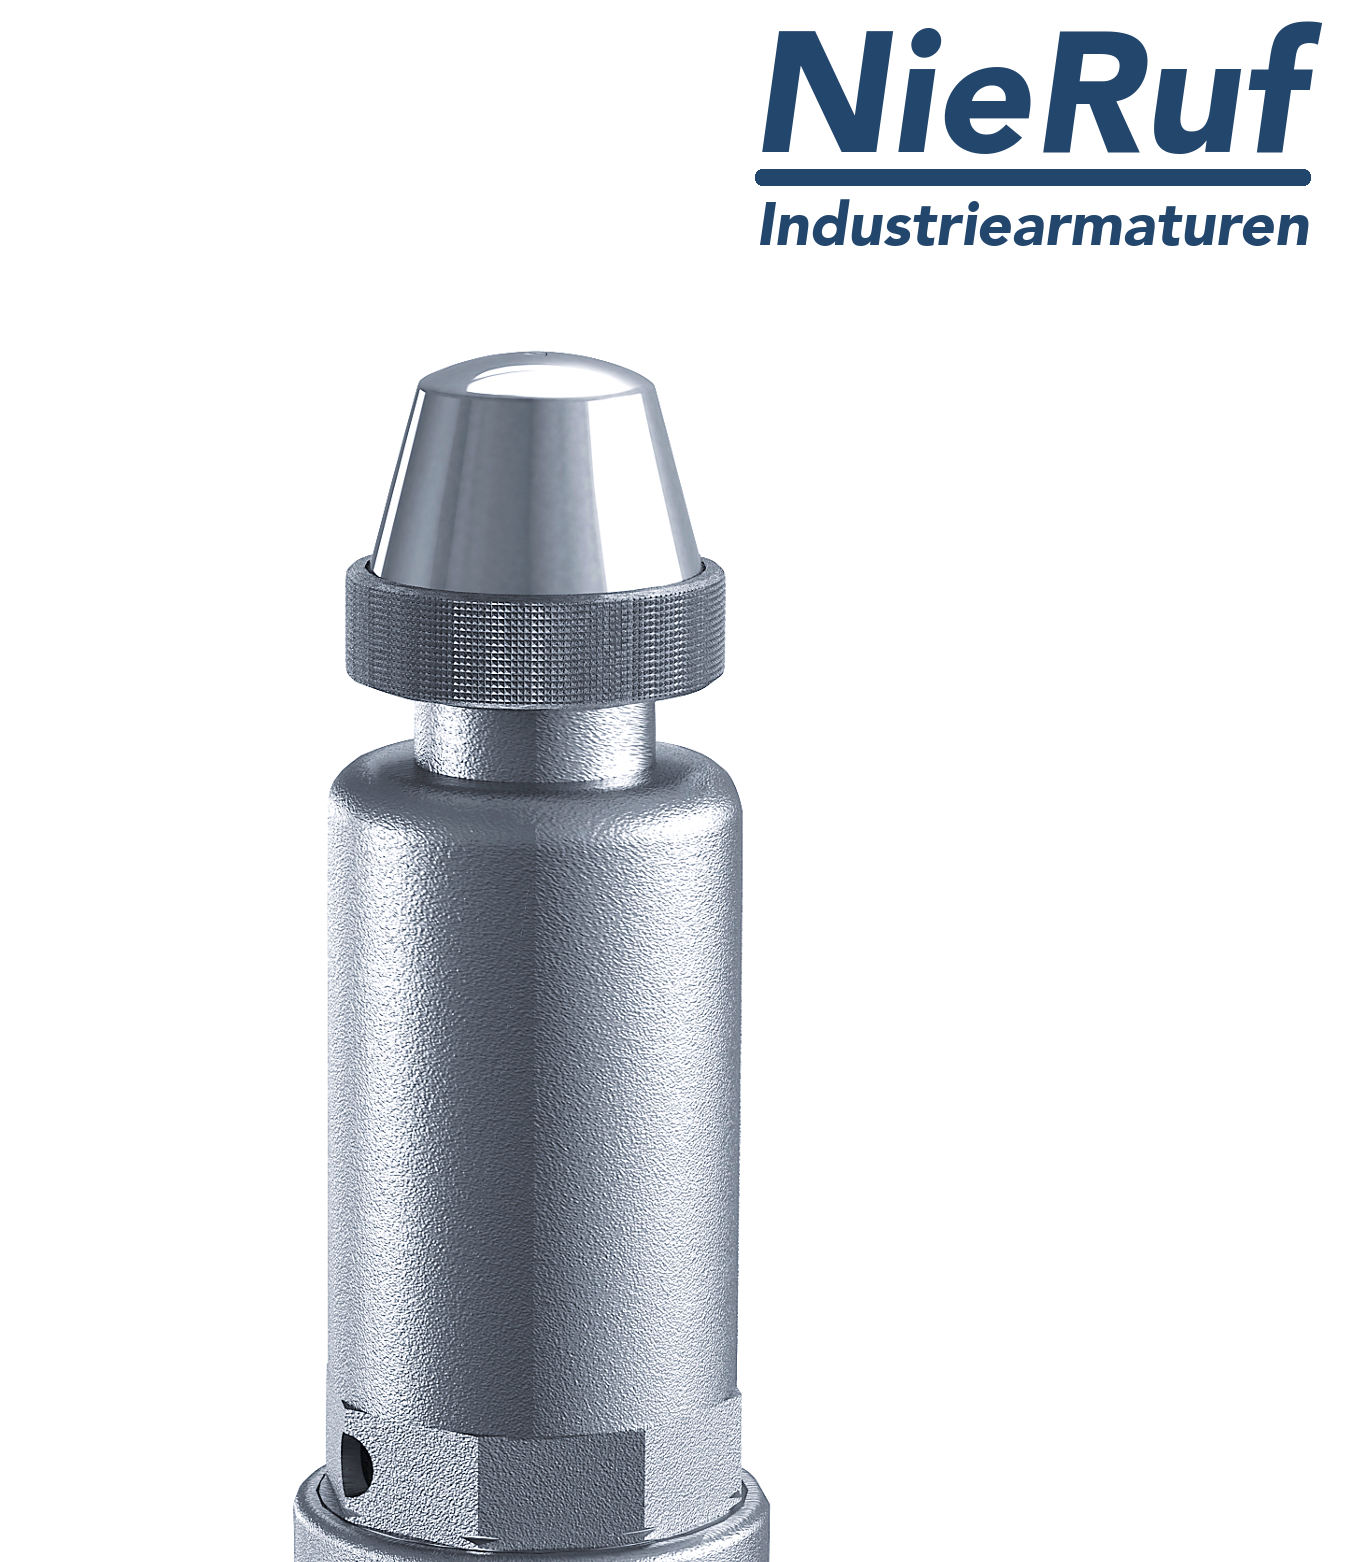 safety valve 1" x 1 1/2" fm SV05 neutral liquid media, stainless steel FKM